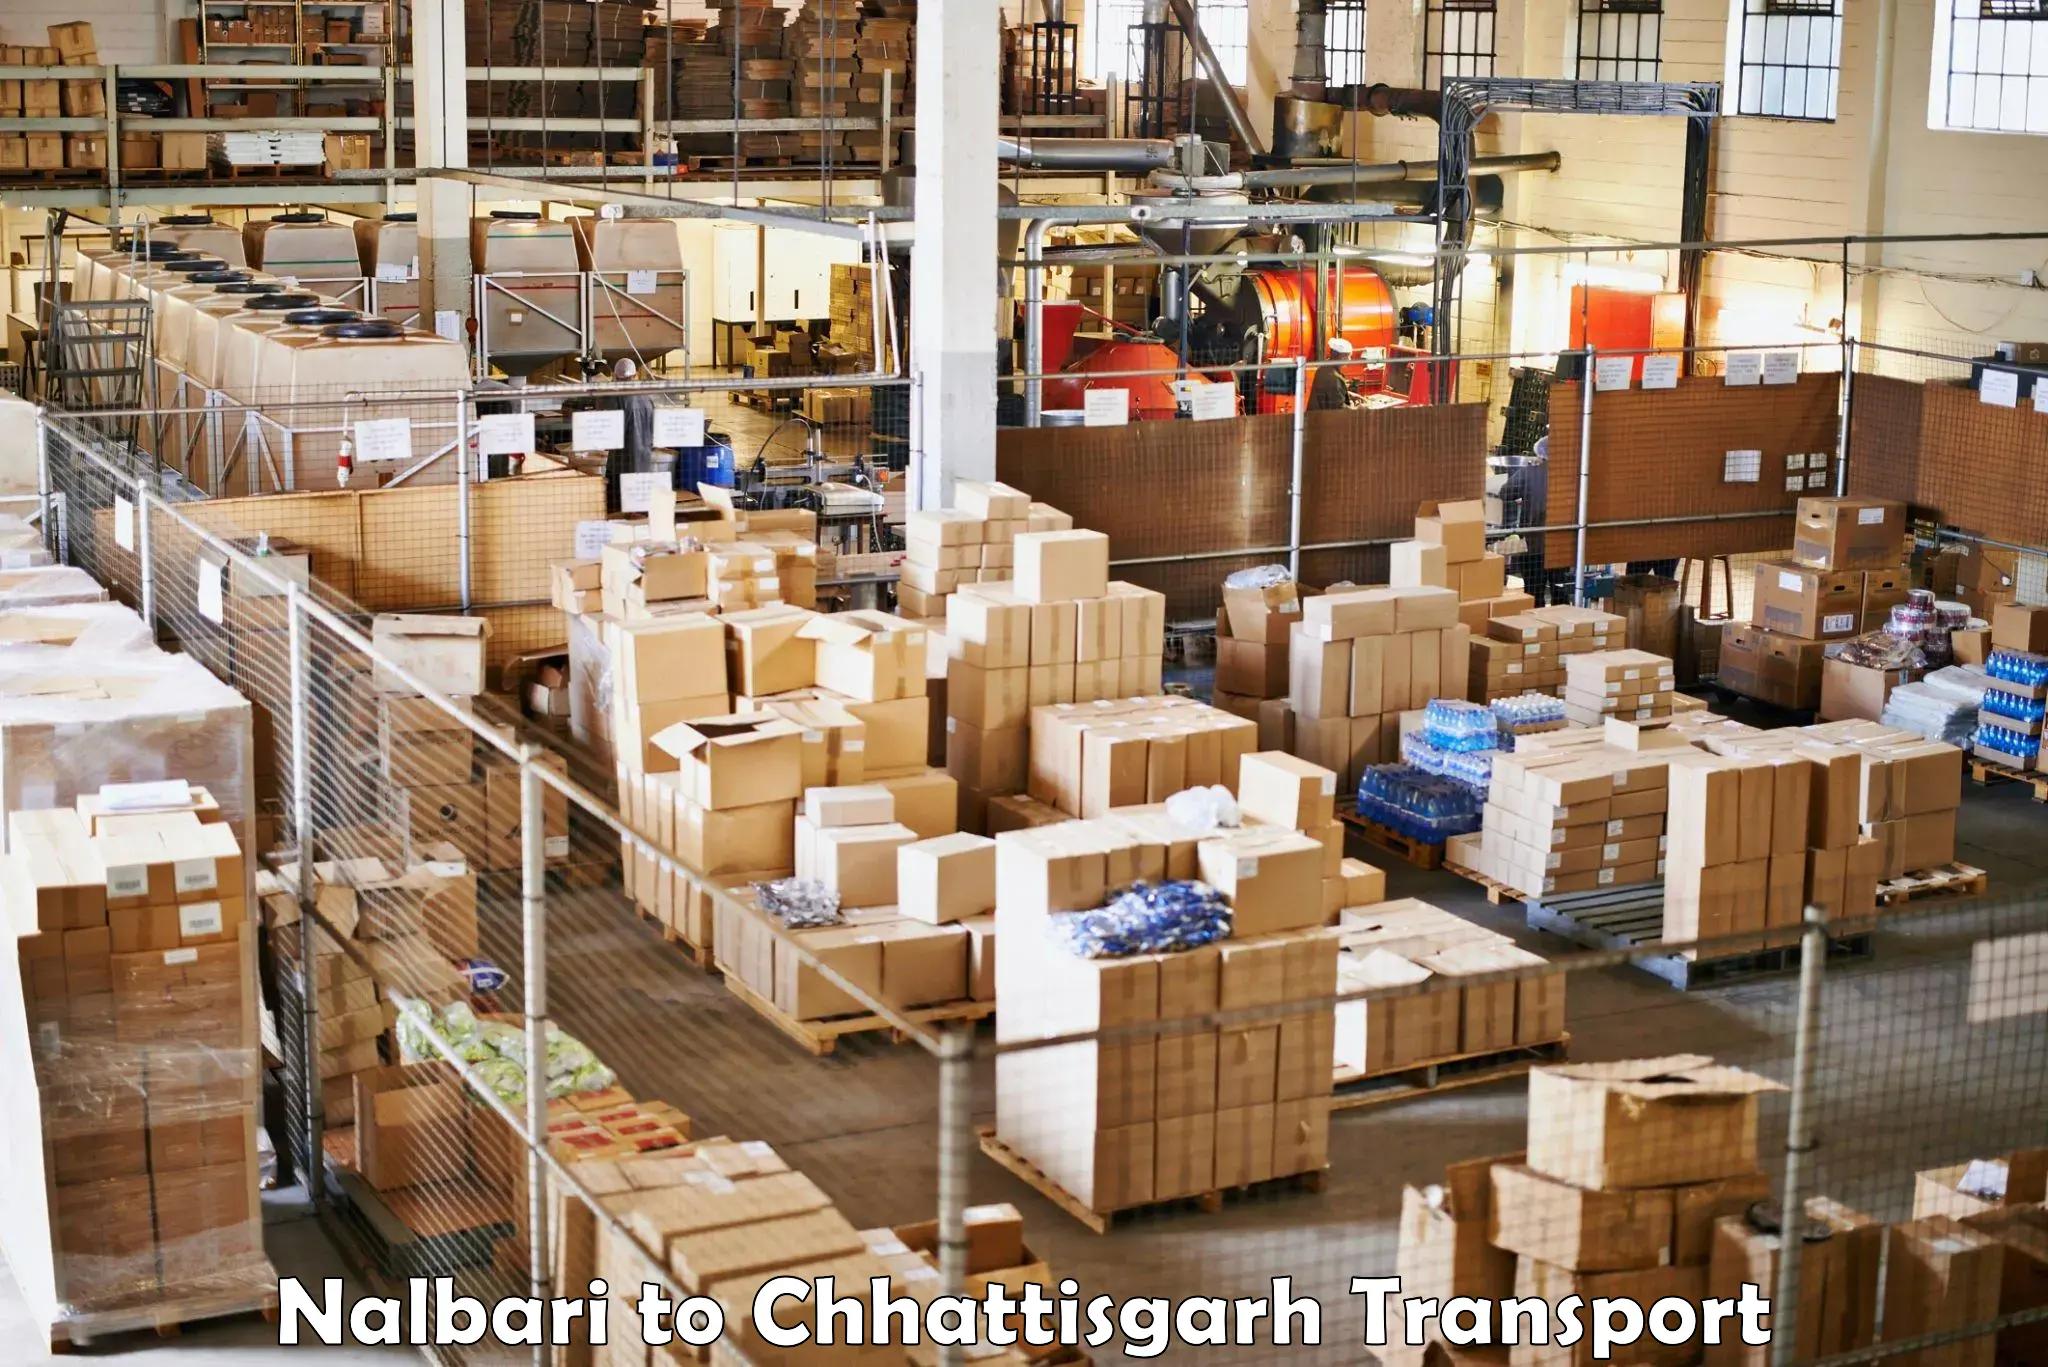 Vehicle transport services Nalbari to Dhamtari